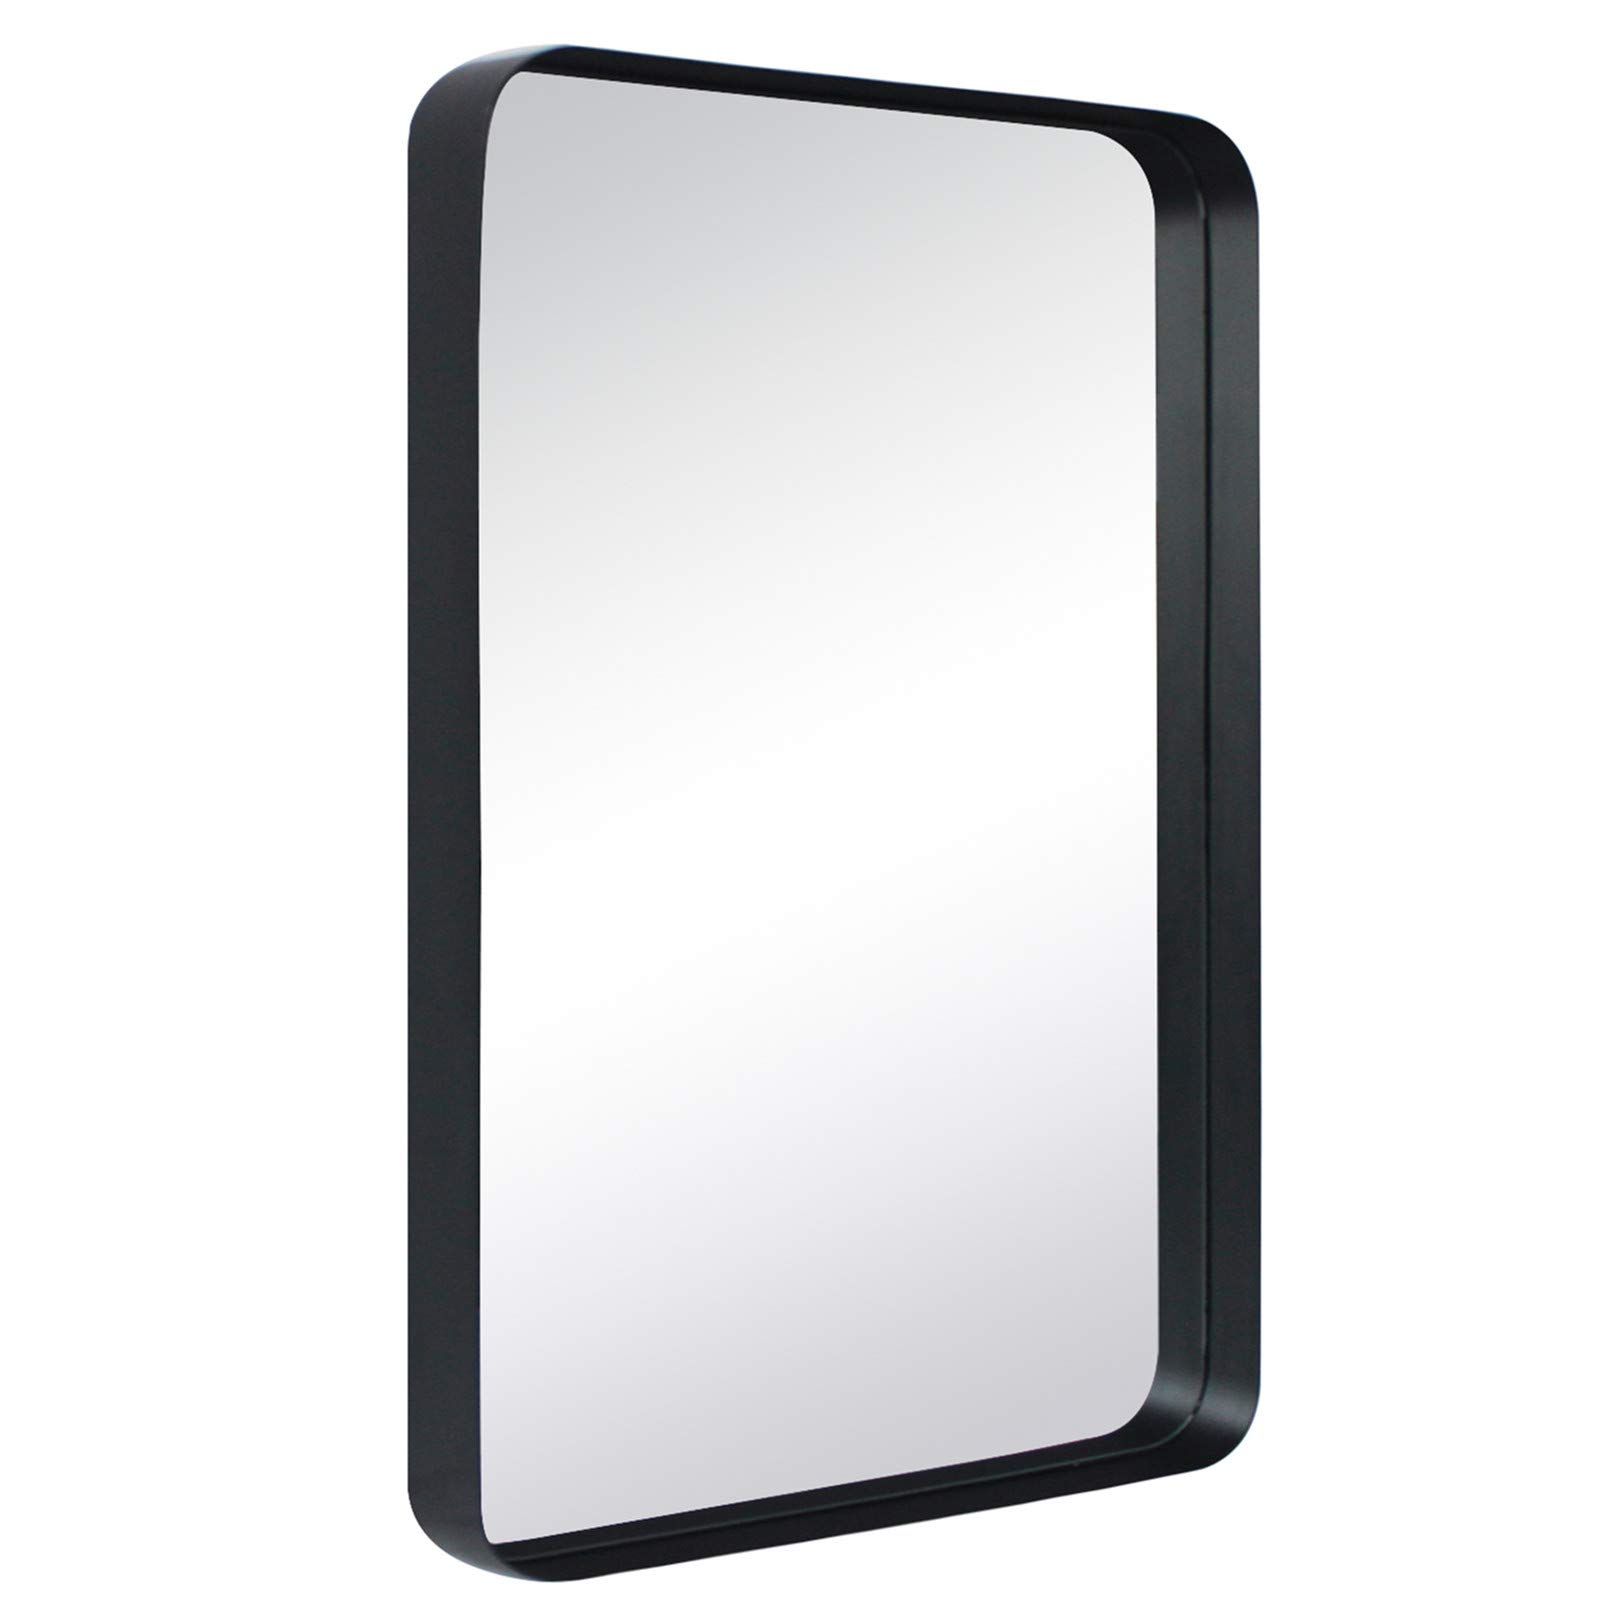 Arthers Stainless Steel Metal Bathroom Vanity Wall Mirrorr-20x30-Black